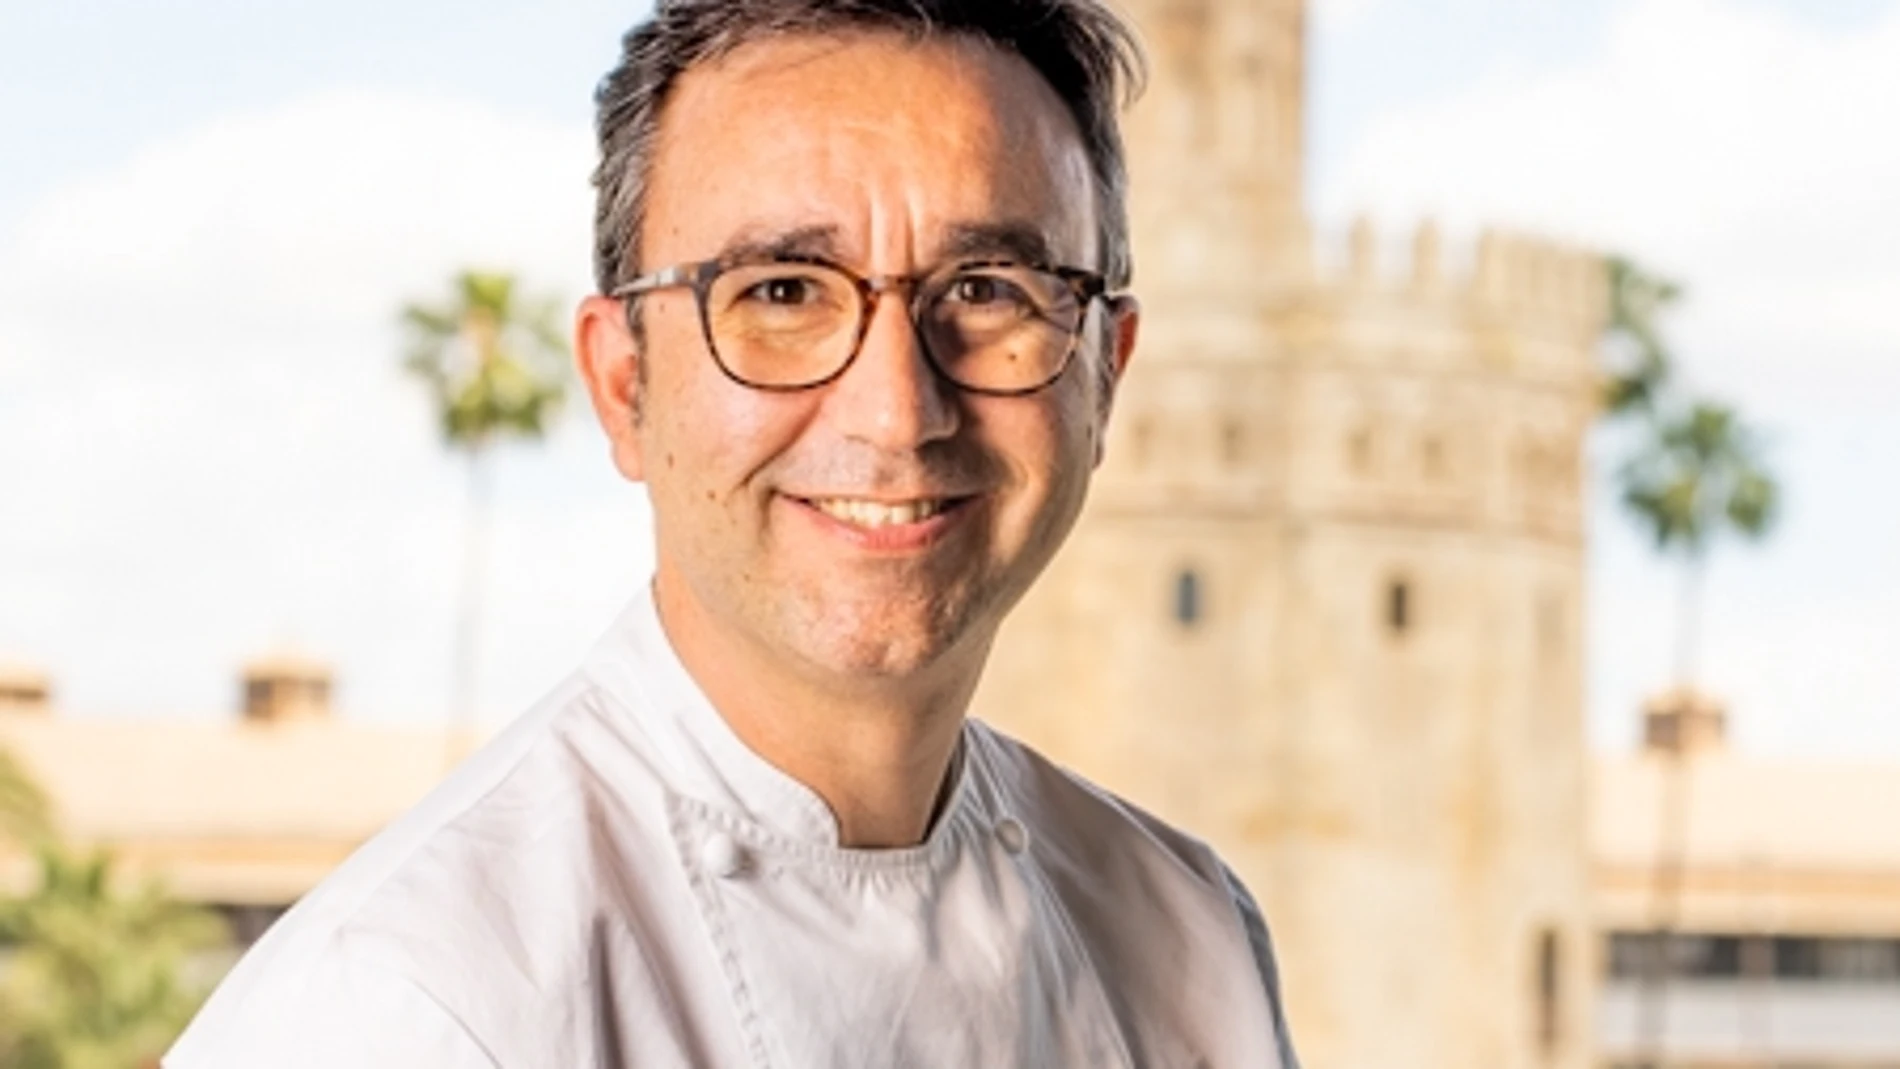 El chef de Abades Triana, Elías del Toro, ofrecerá un menú especial maridado con Cervezas Alhambra